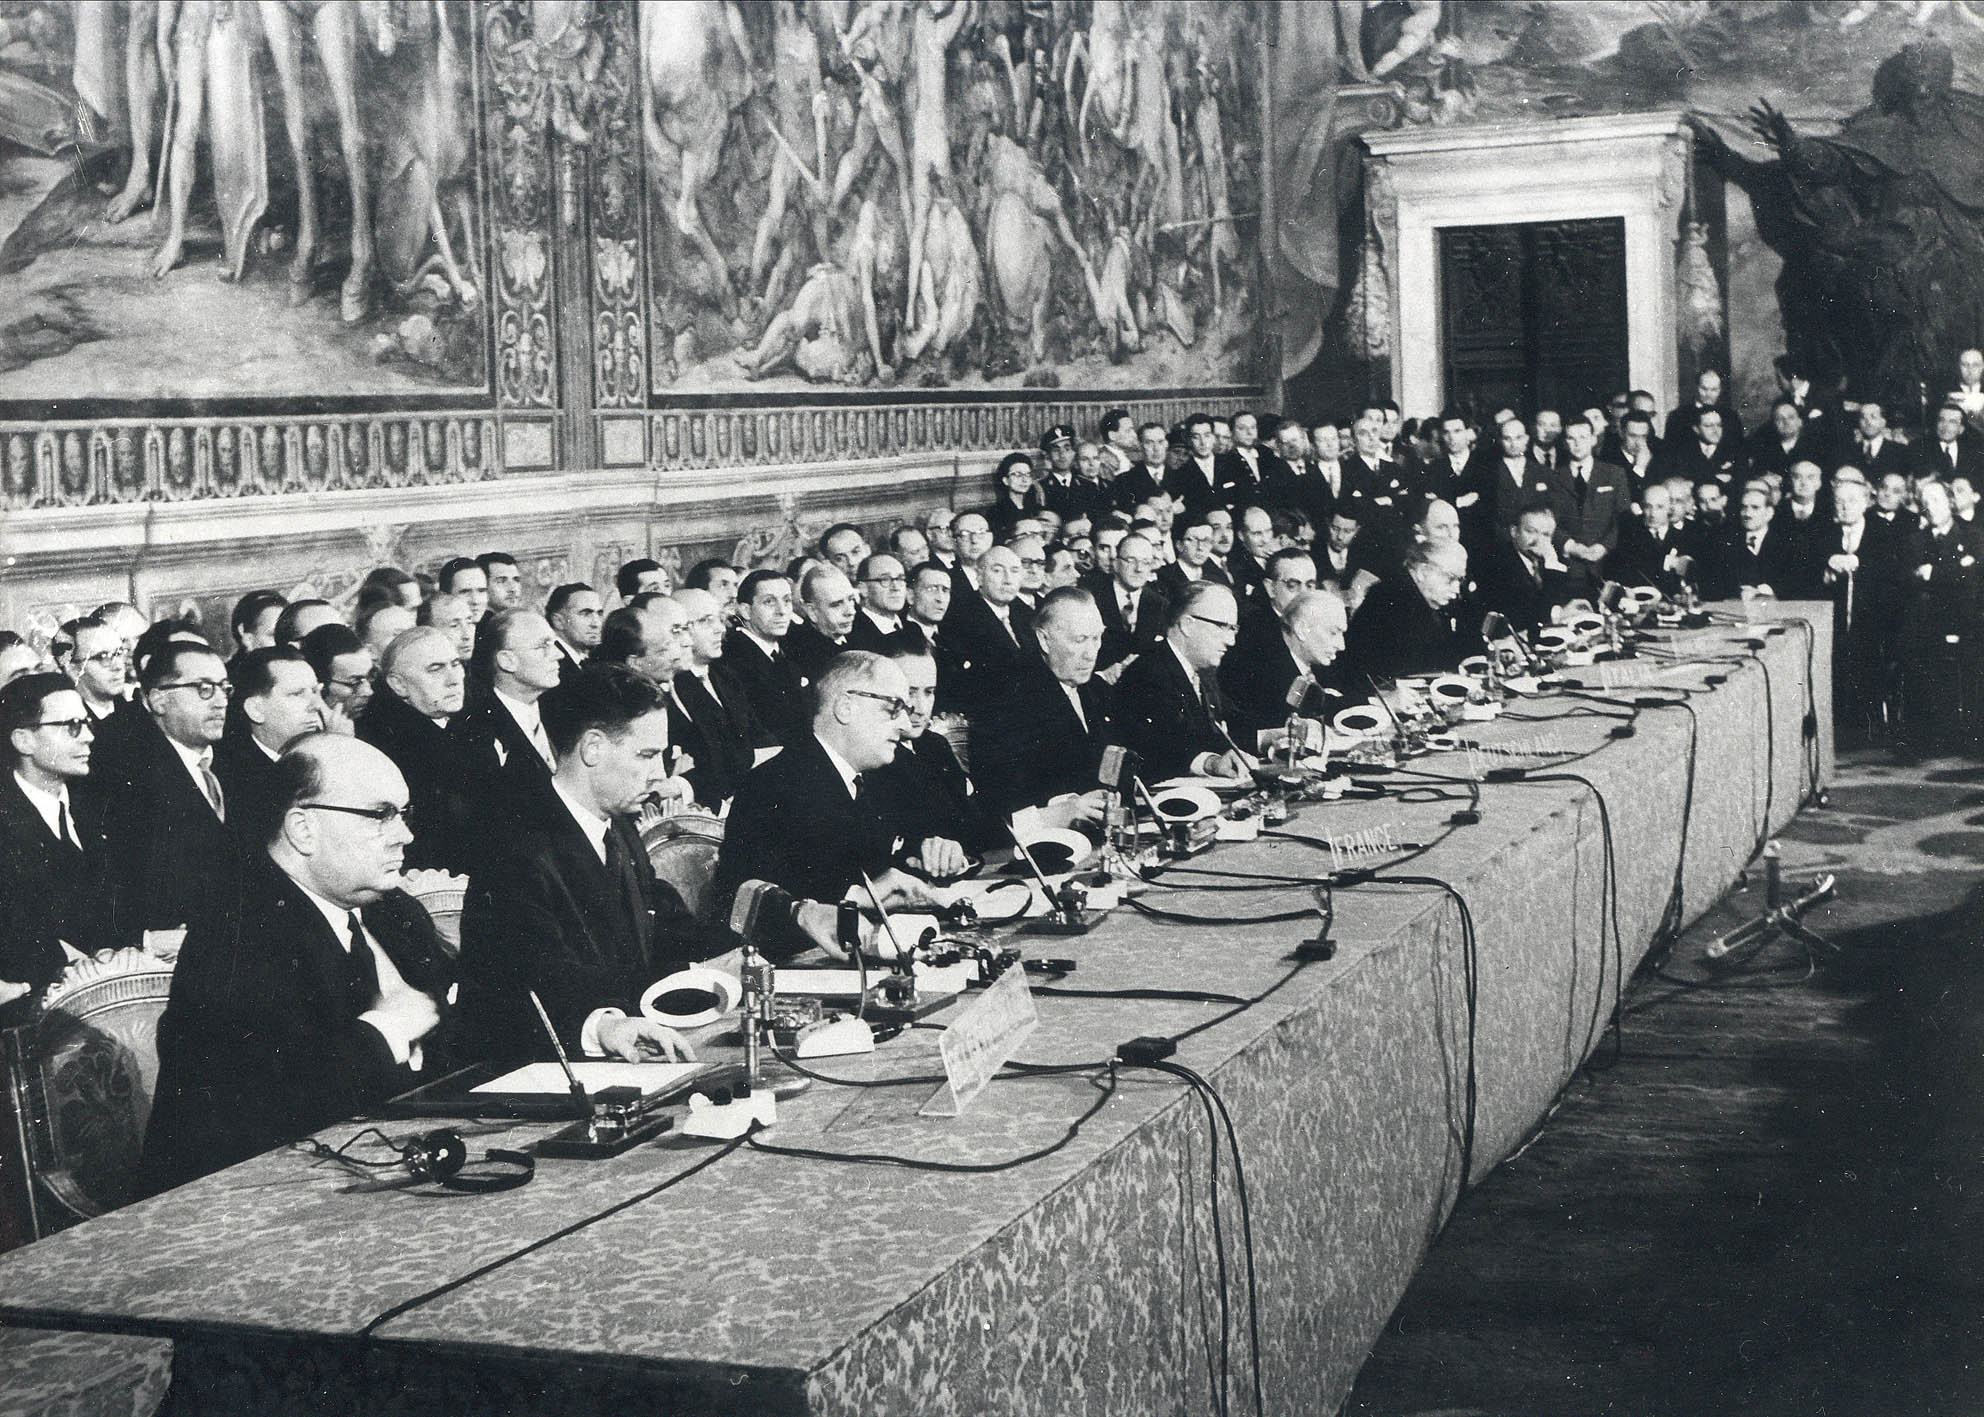 Римский договор 1957. Римское соглашение 1957. ЕЭС 1957. Учреждение европейского экономического сообщества 1957. Совет министров Франции 20 века.